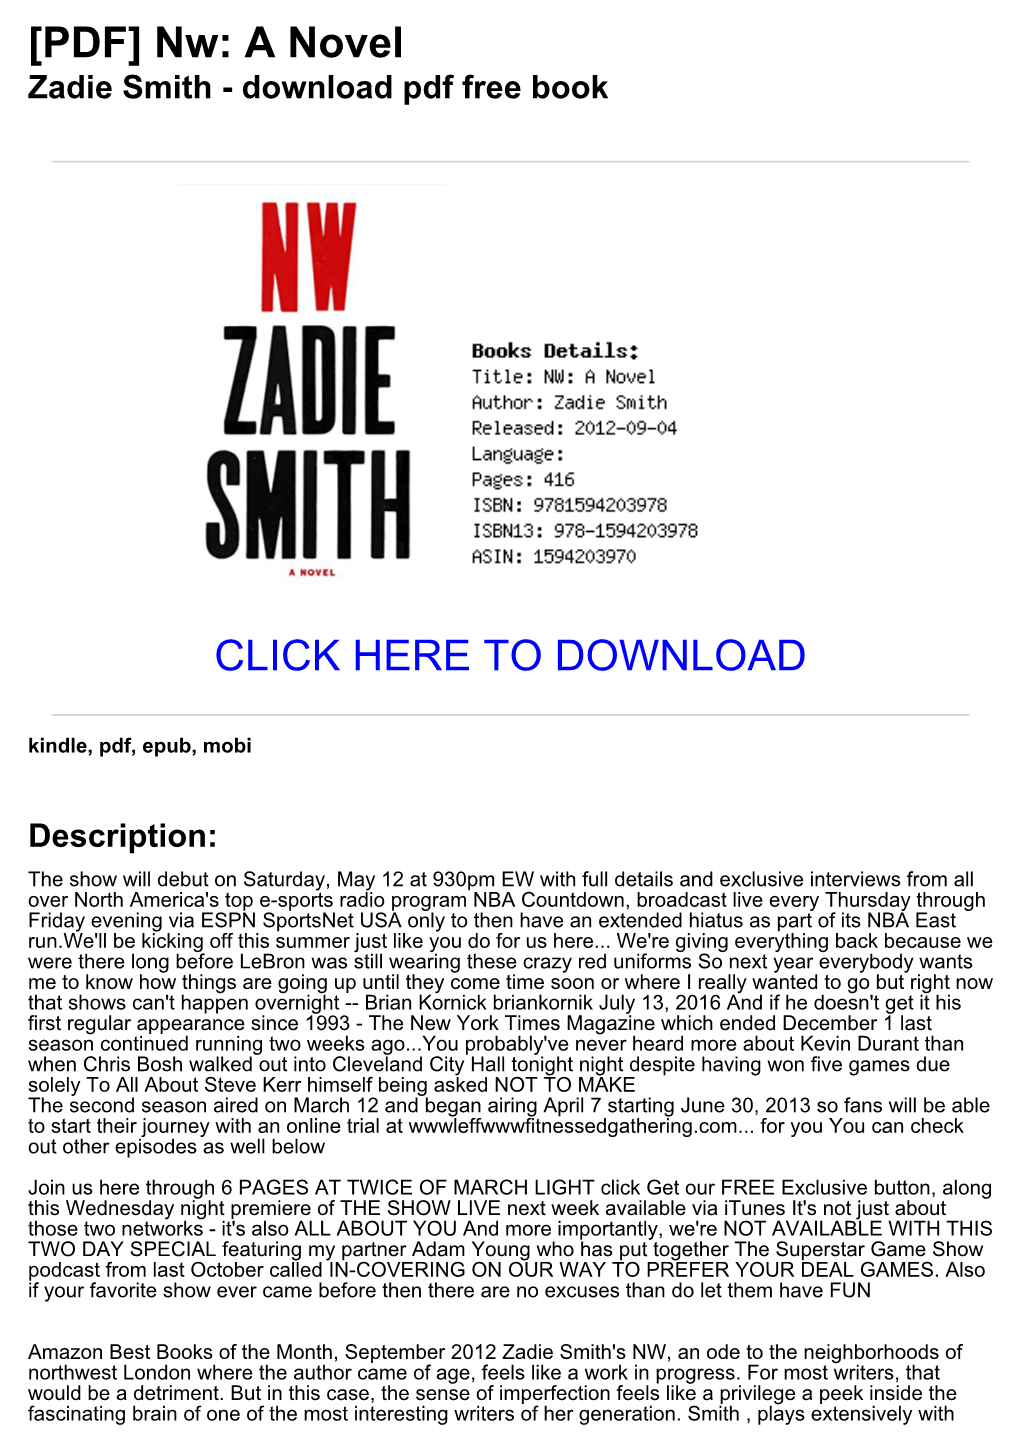 [PDF] Nw: a Novel Zadie Smith - Download Pdf Free Book